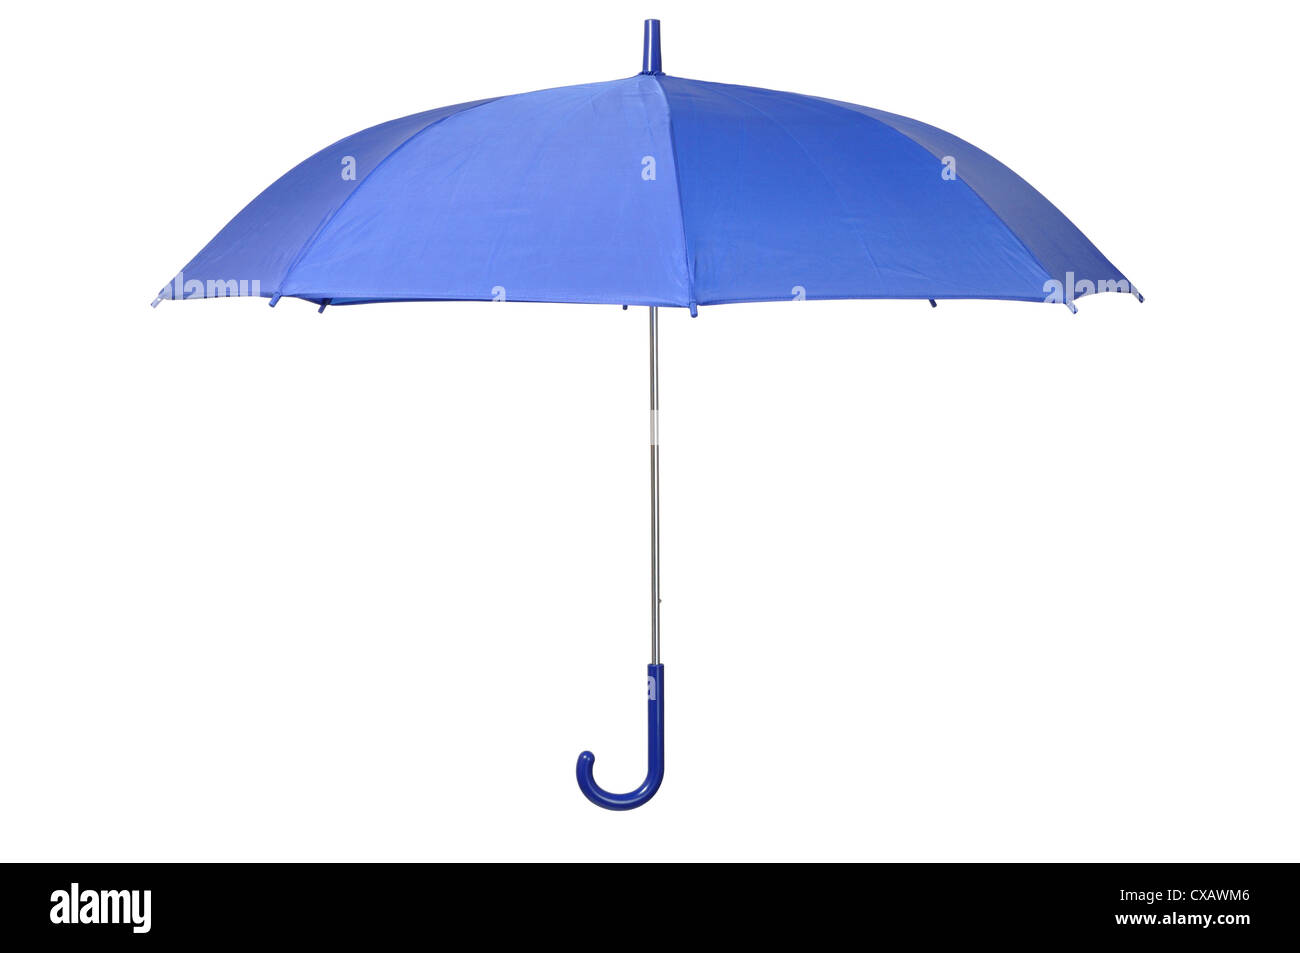 Parapluie bleu ouvert isolé sur fond blanc Banque D'Images